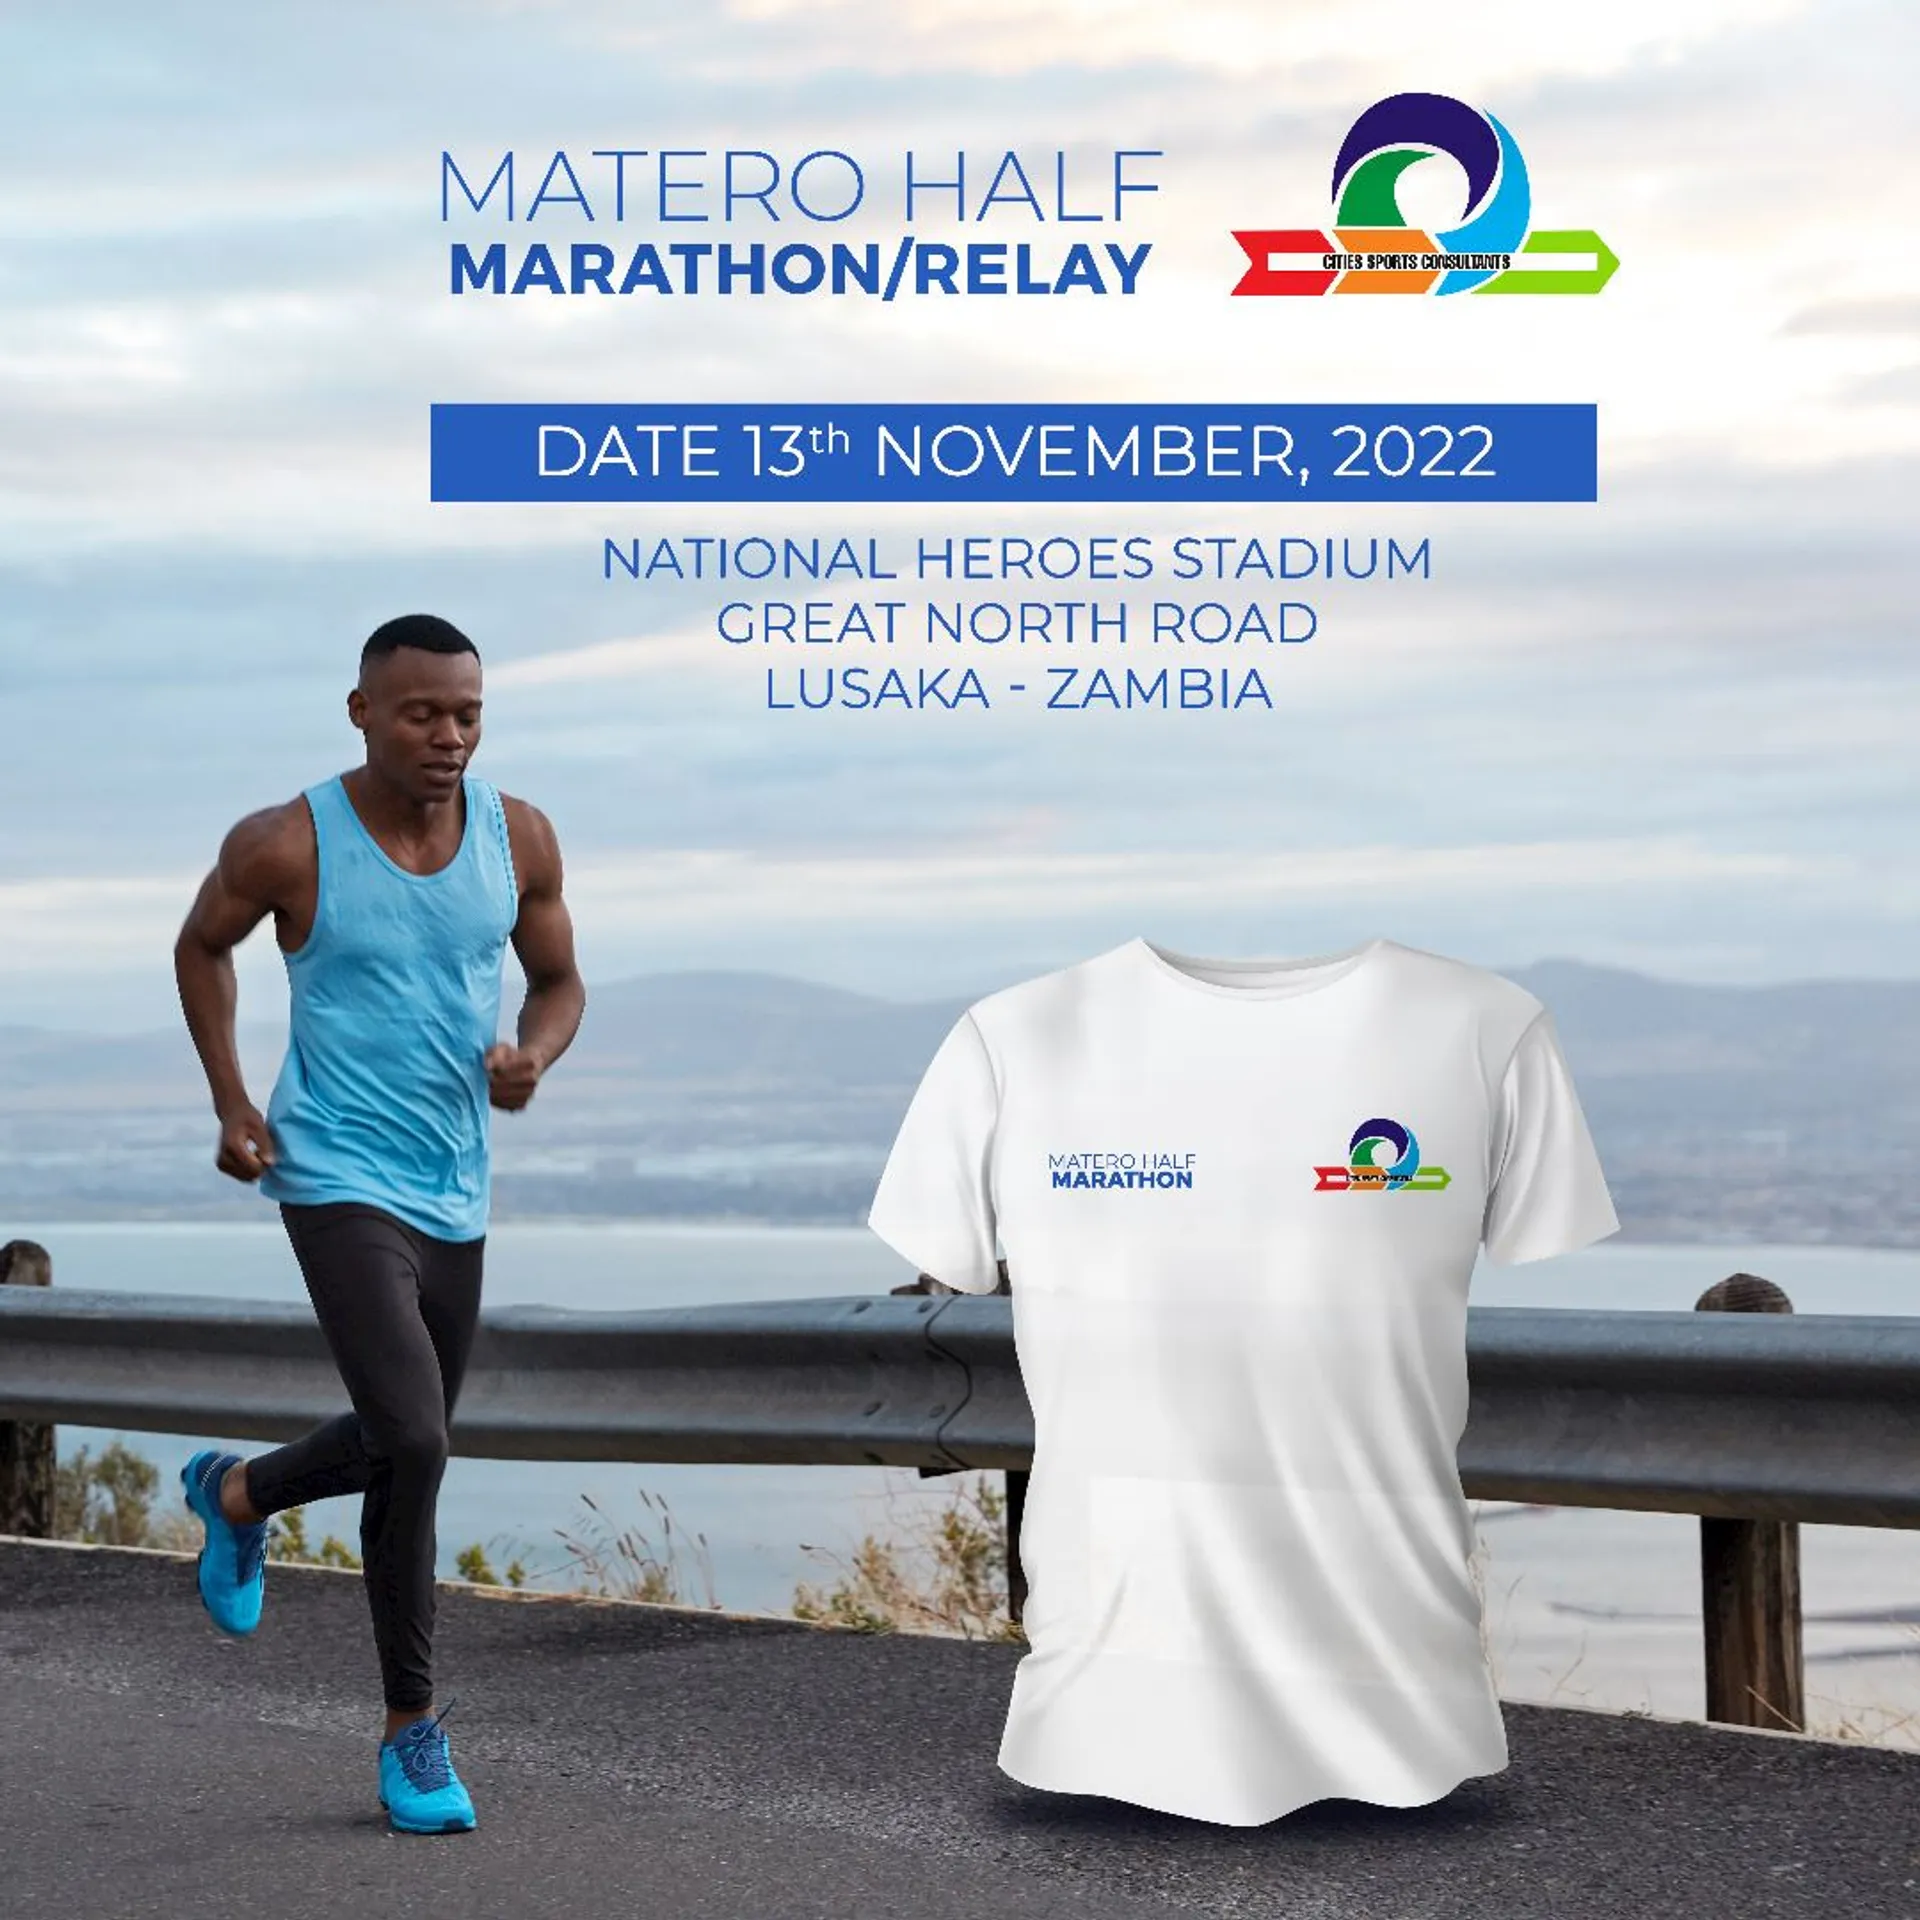 Matero Half Marathon